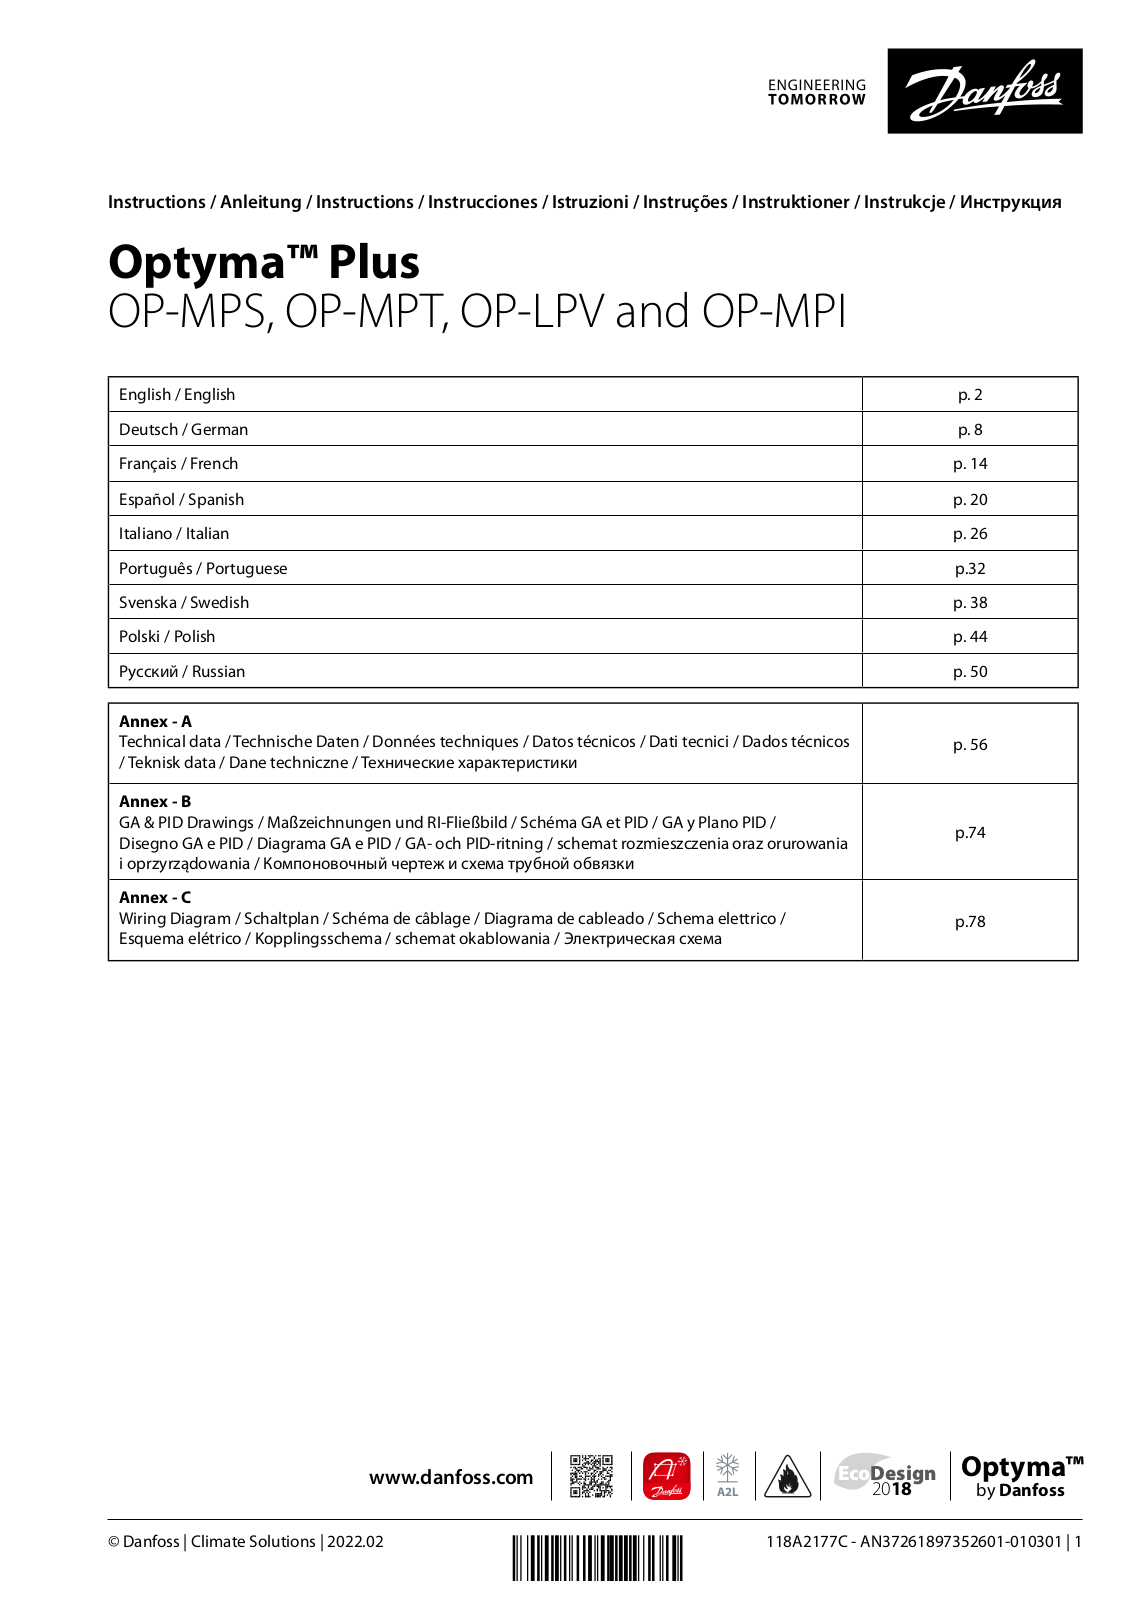 Danfoss OP-MPS, OP-MPT, OP-LPV, OP-MPI Installation guide